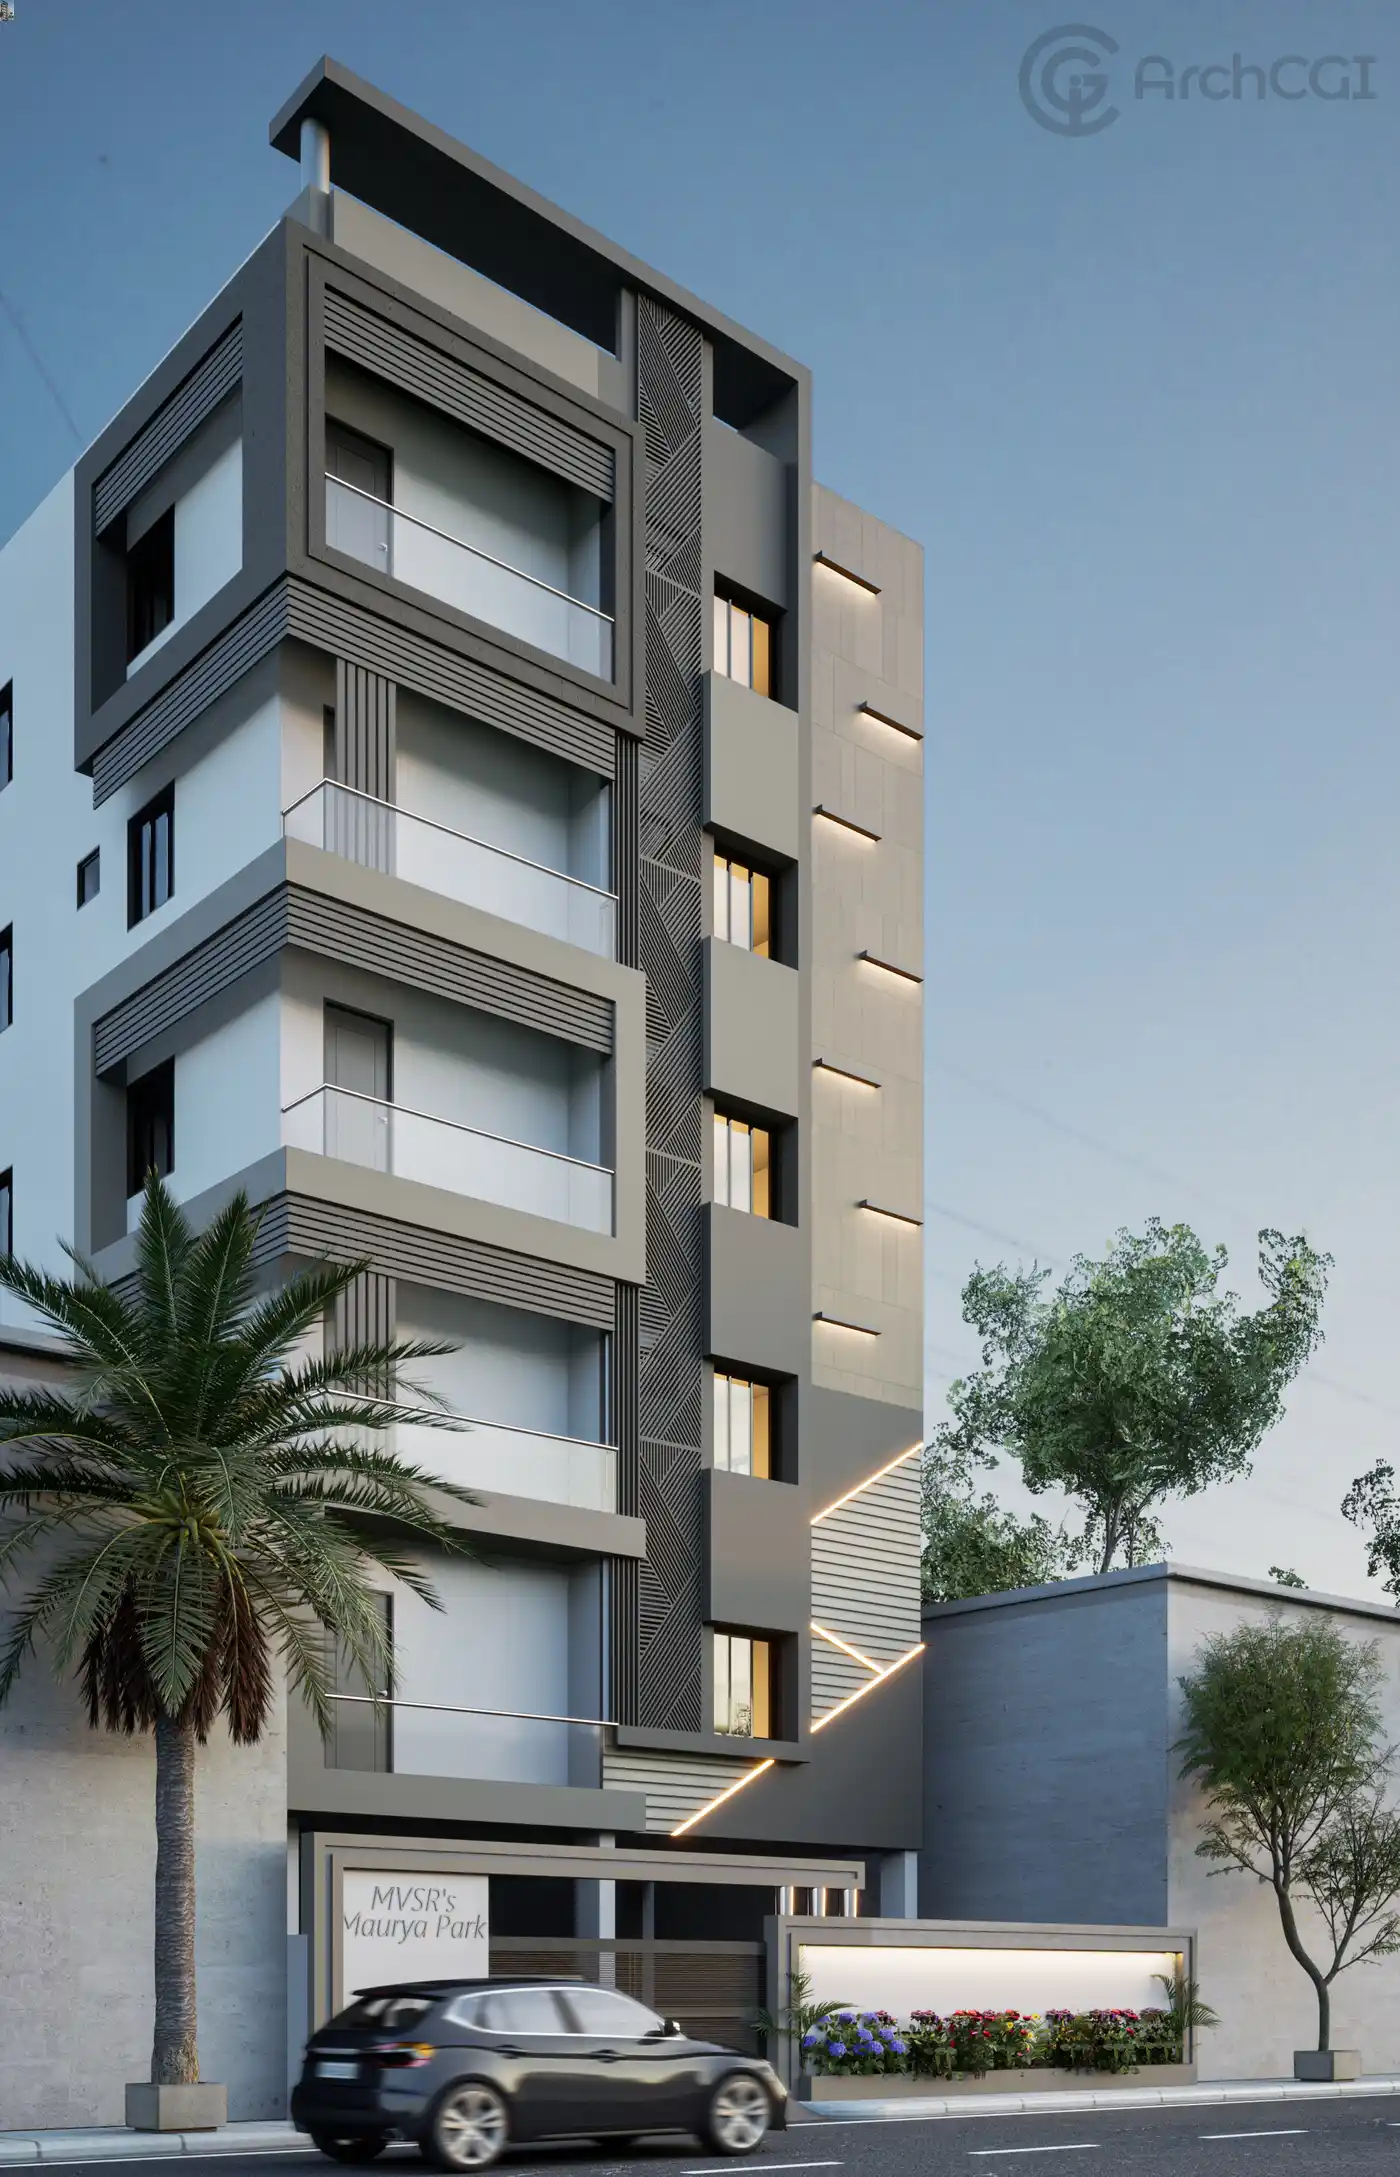 Condo Exterior Design | Modern G+5 Indian Apartment Design | ArchCGI